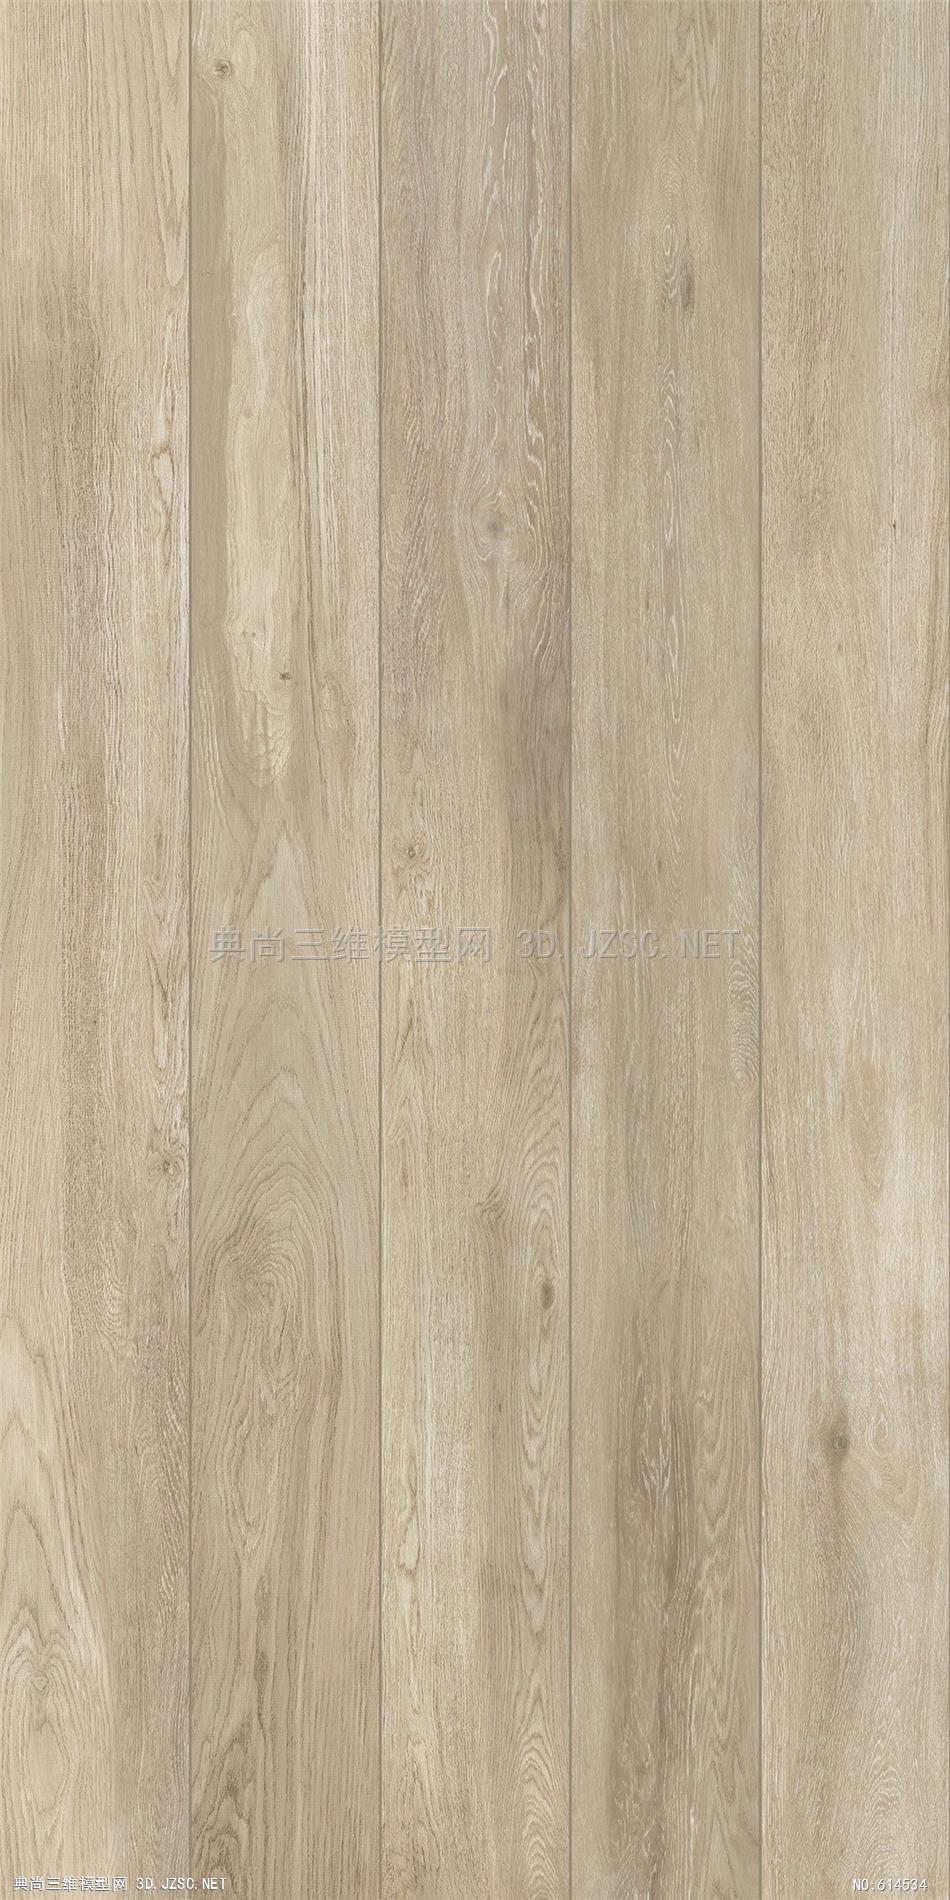 木饰面 木纹 木材  高清材质贴图 (332)